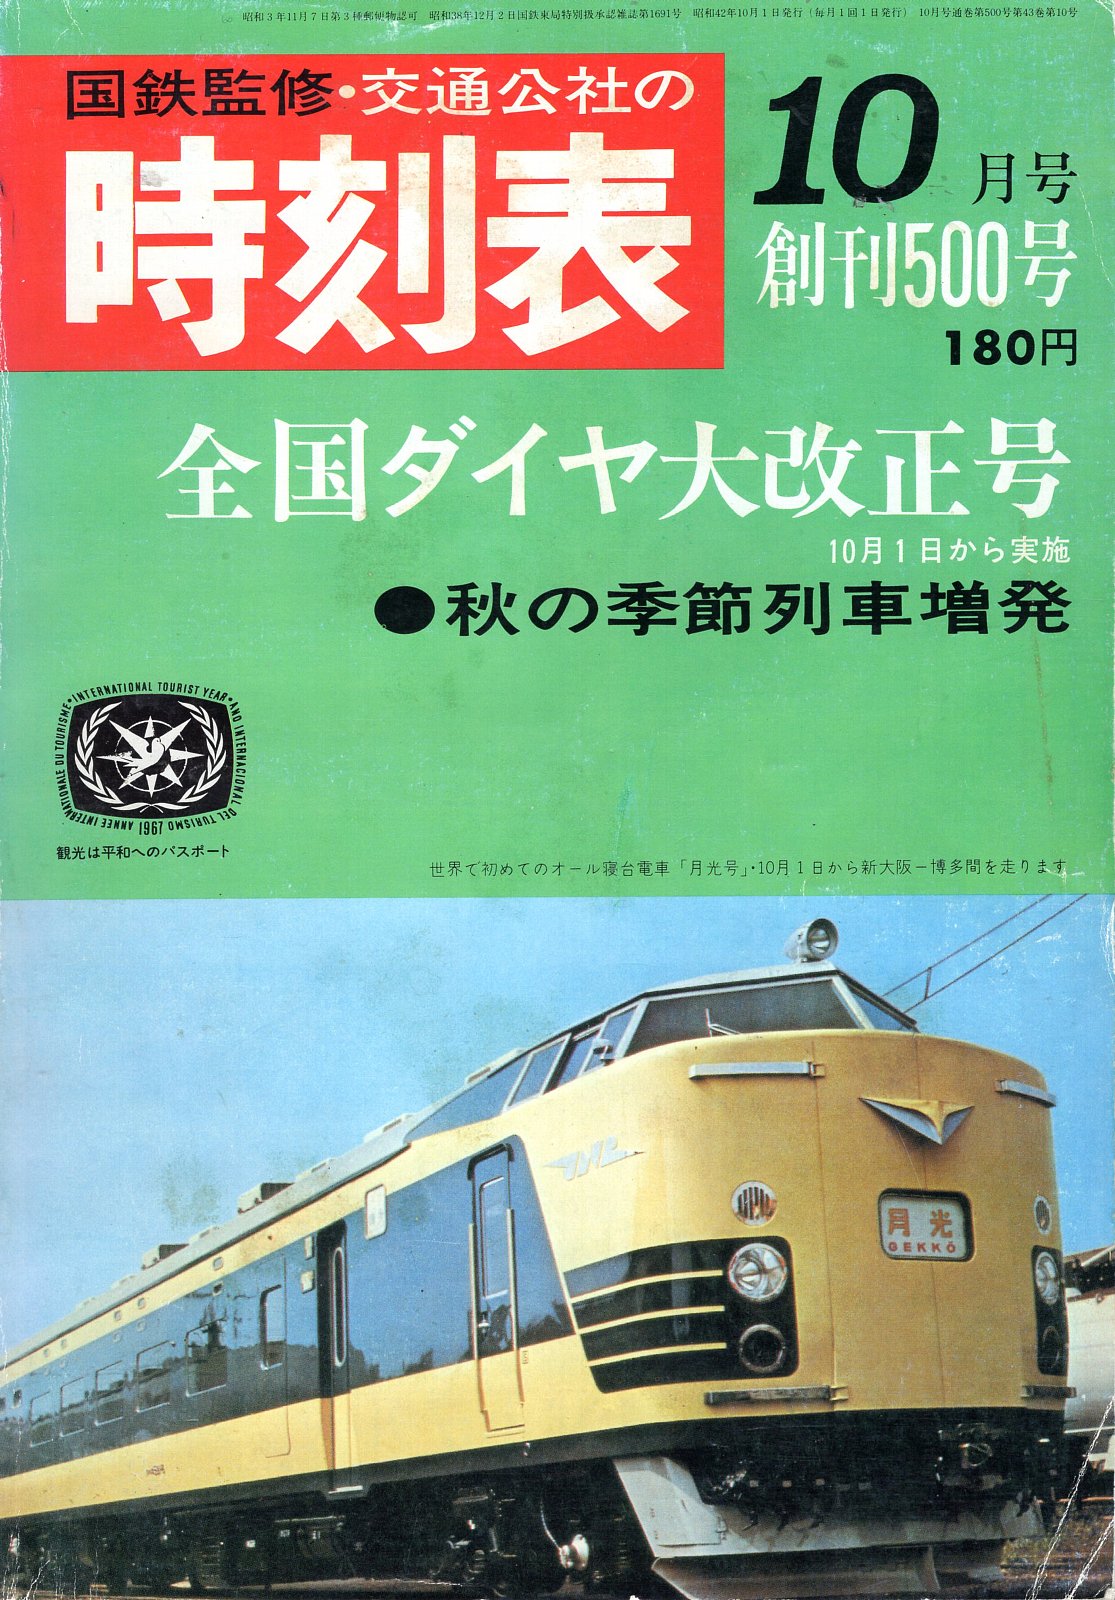 国鉄監修、日本交通公社発行の時刻表が、10月のダイヤ改正を機に、これまでのB6判からB5判の週刊誌型にワイド化